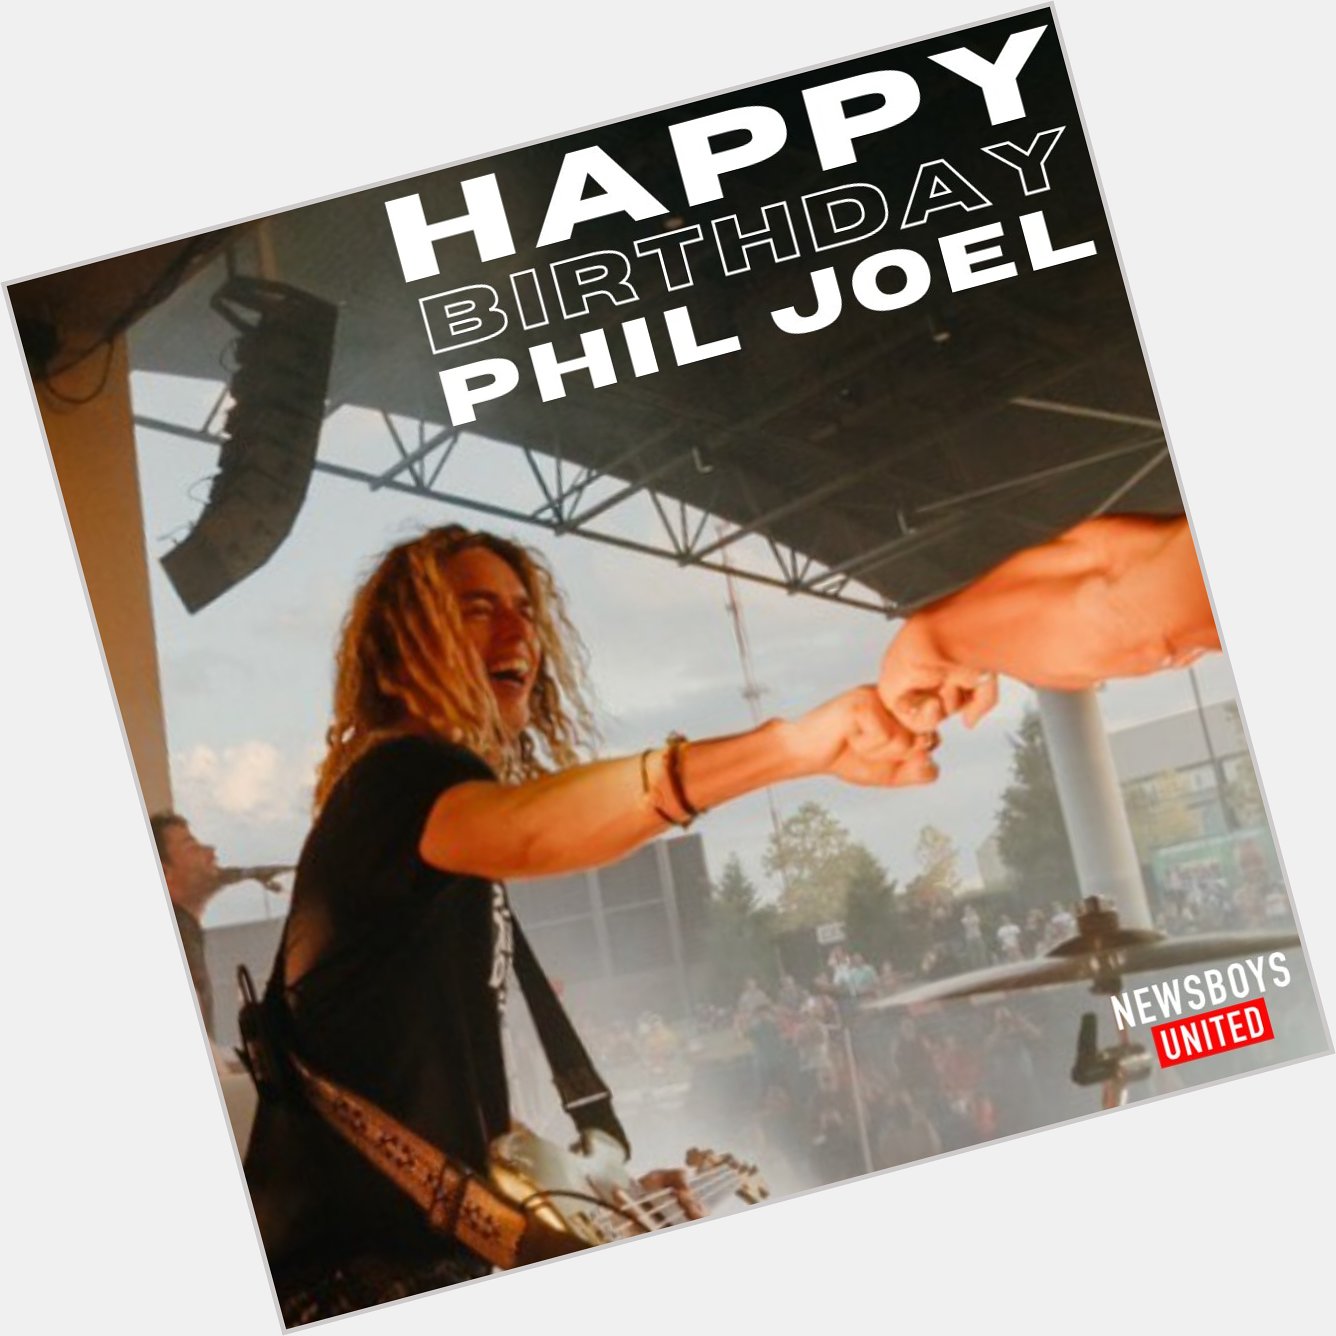 Happy Birthday Phil Joel!! 